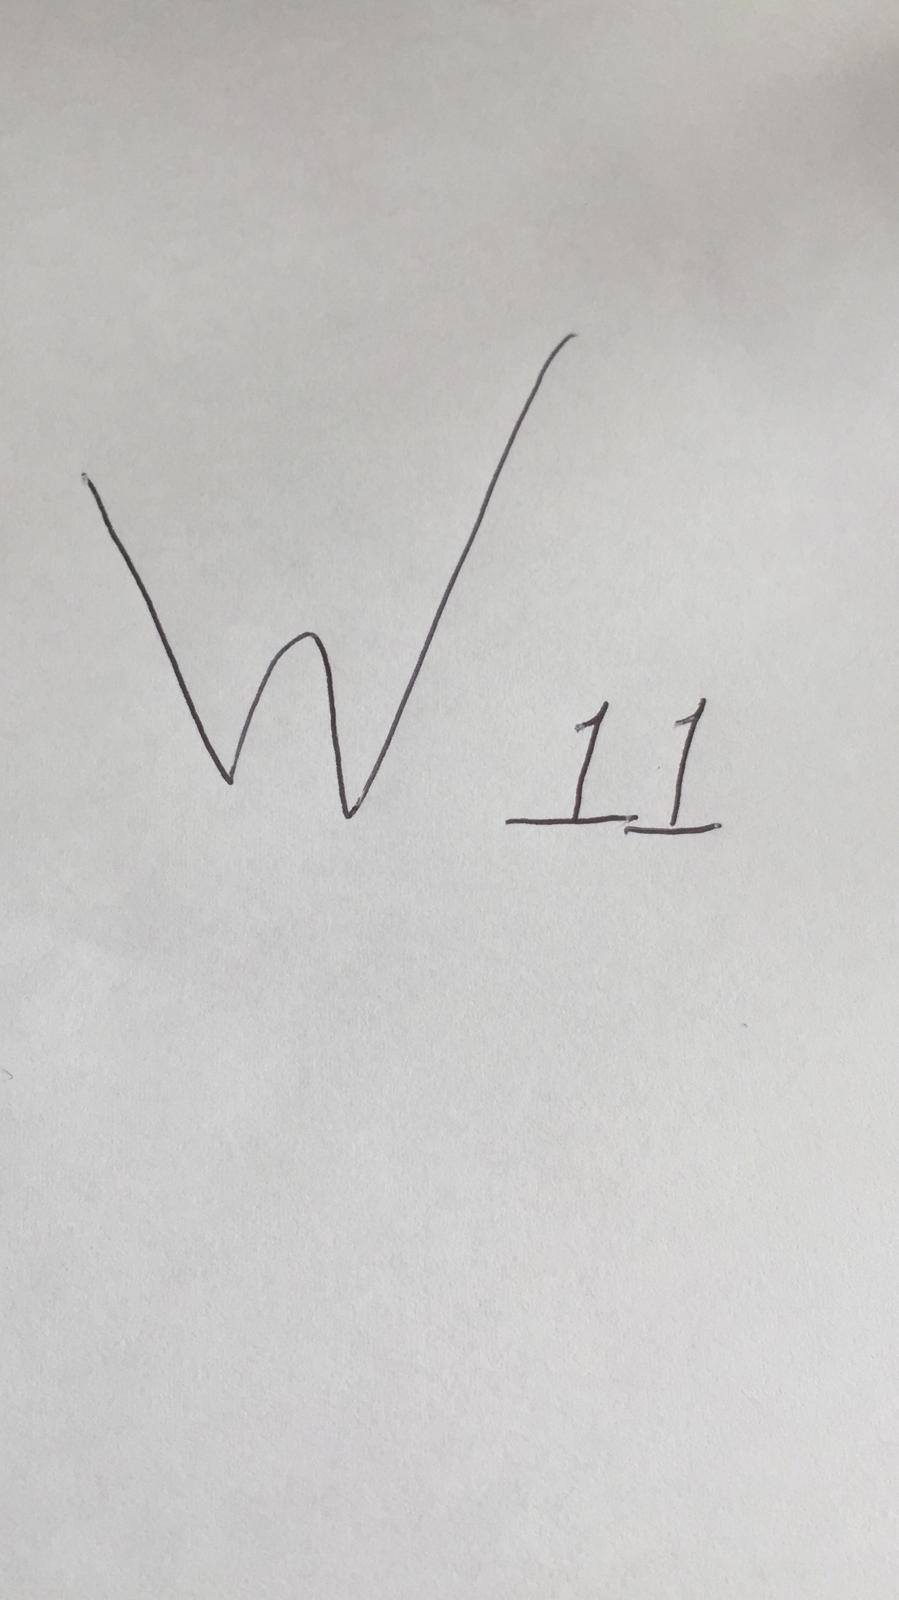 W11 written on paper